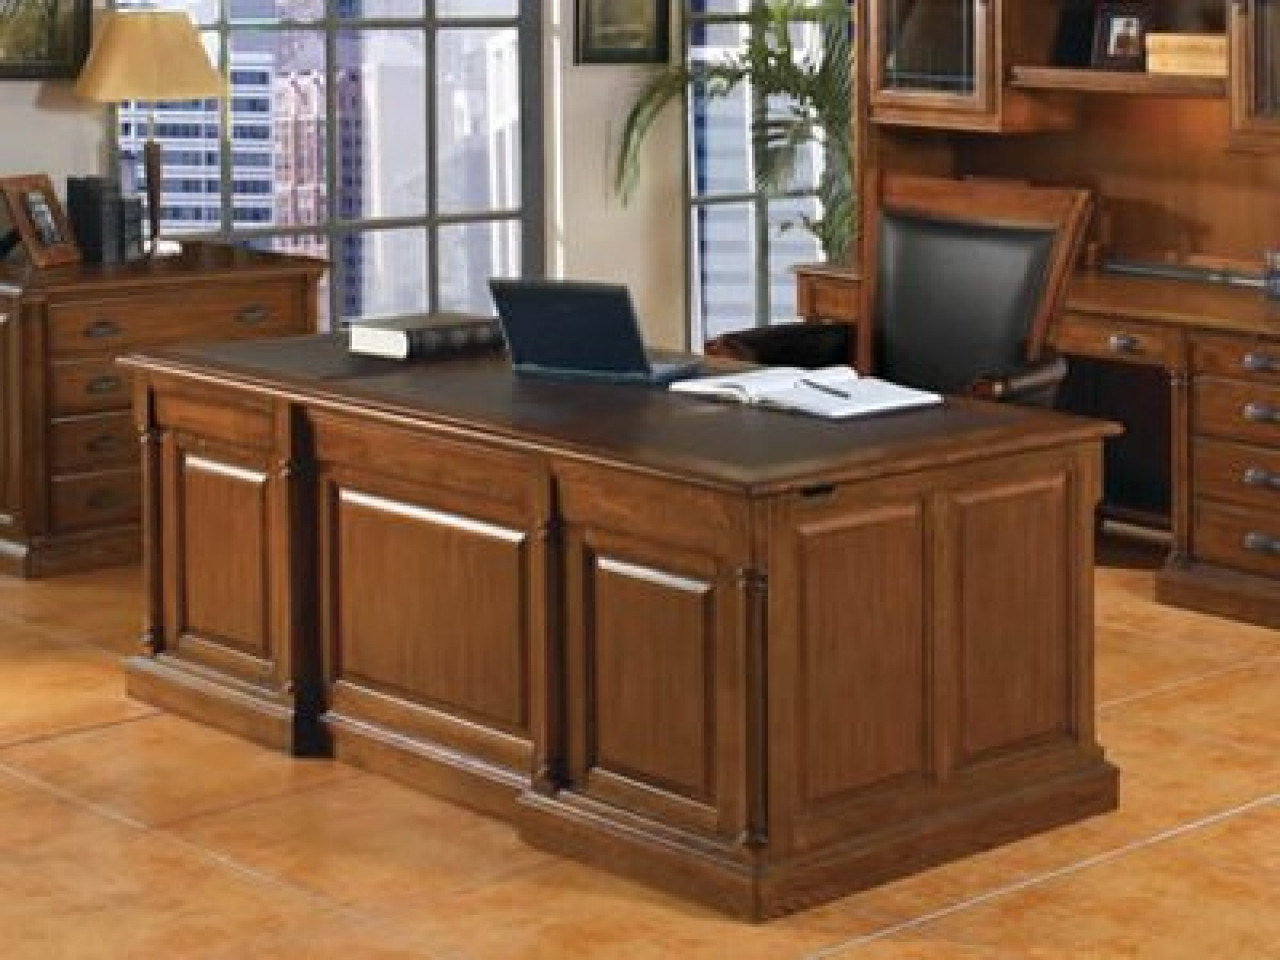 DIY Executive Desk Plans
 Lawyer furnitures office desk plans woodworking diy